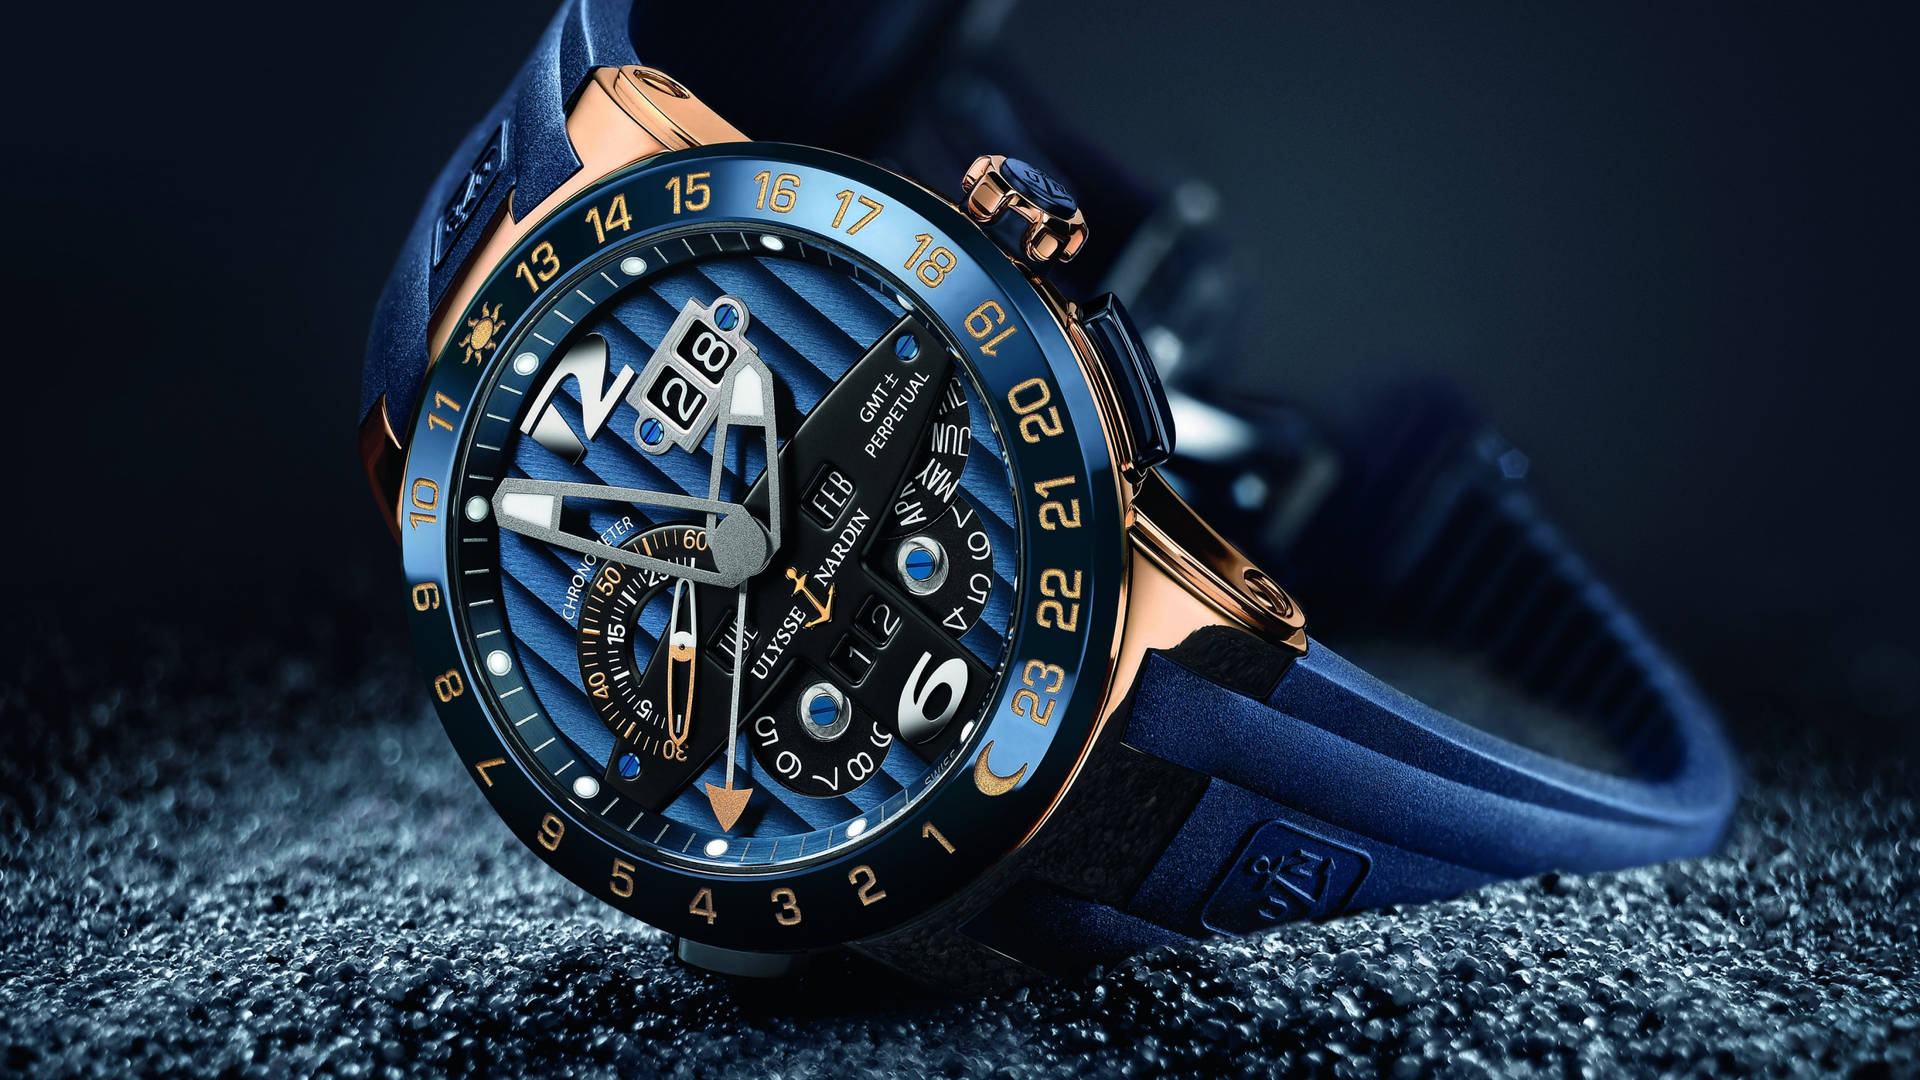 Luxury Swiss Watch By Ulysse Nardin Background